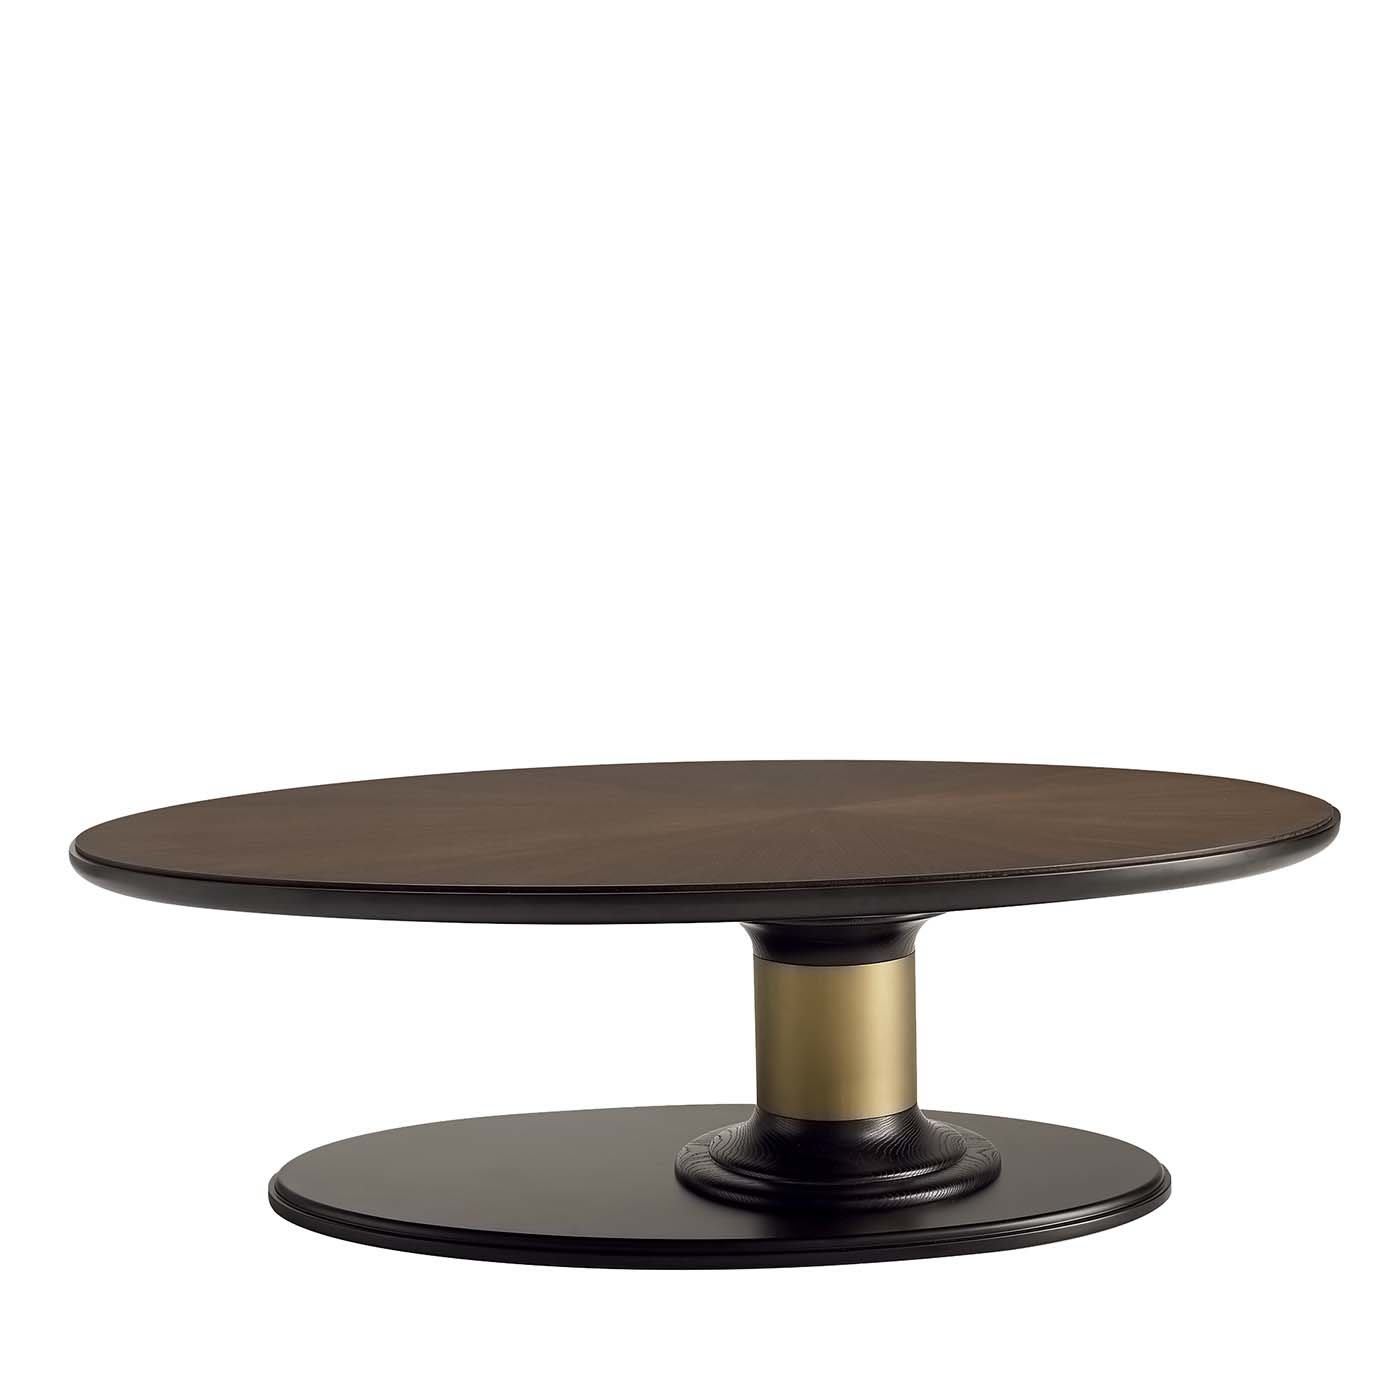 Tall Oval Coffee Table - A.R. Arredamenti